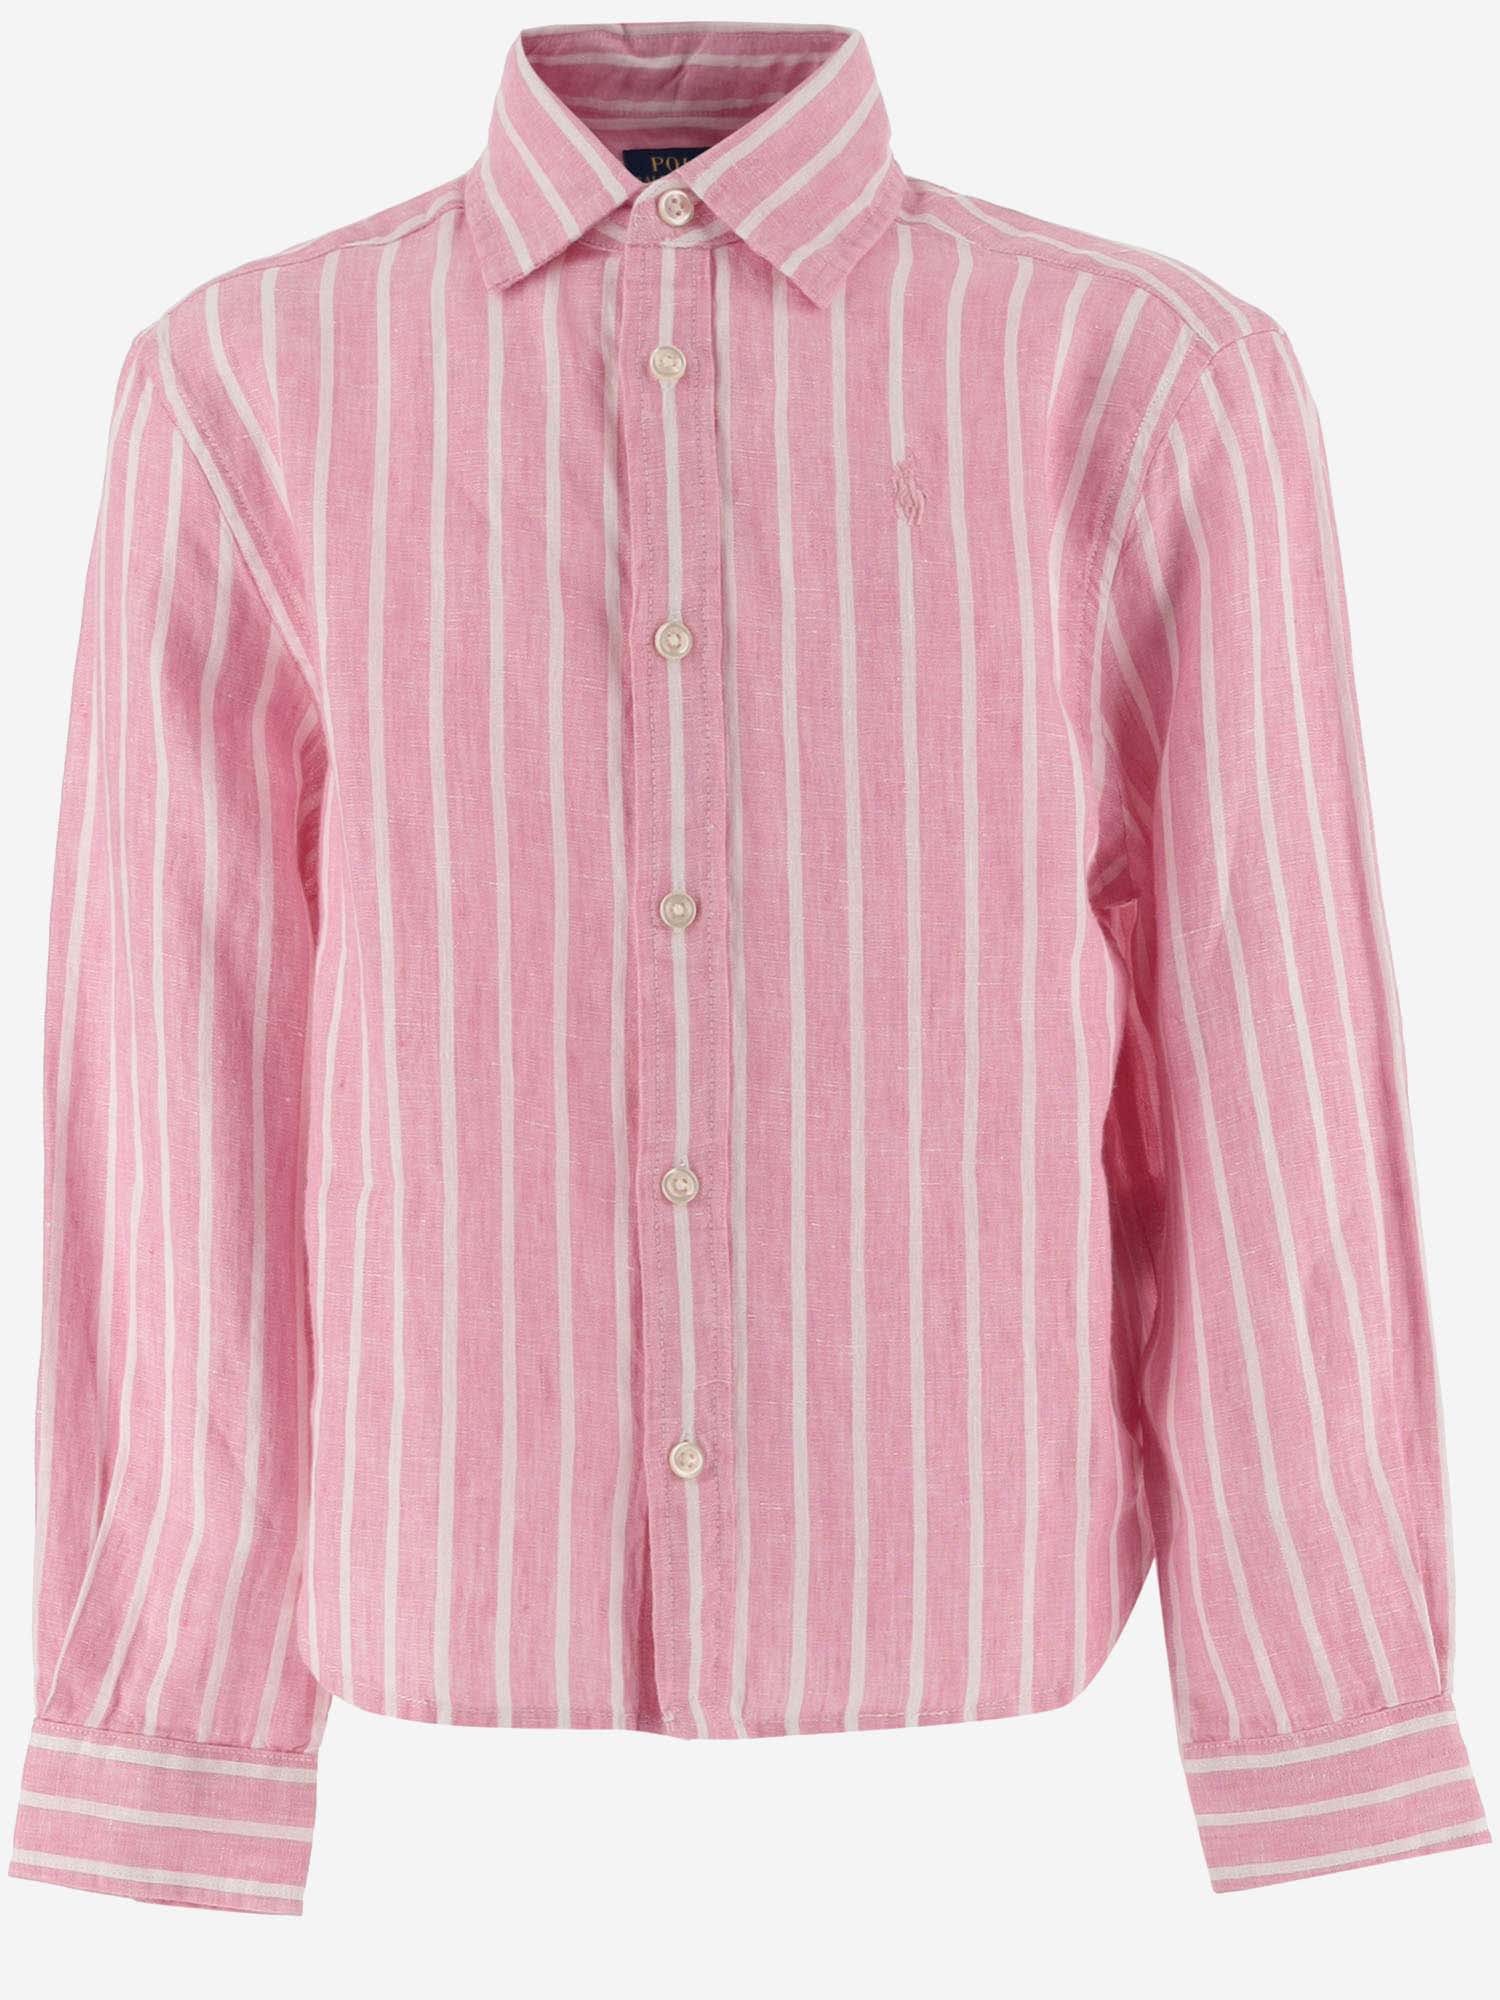 Ralph Lauren Kids' Linen Striped Shirt With Logo In Rosa